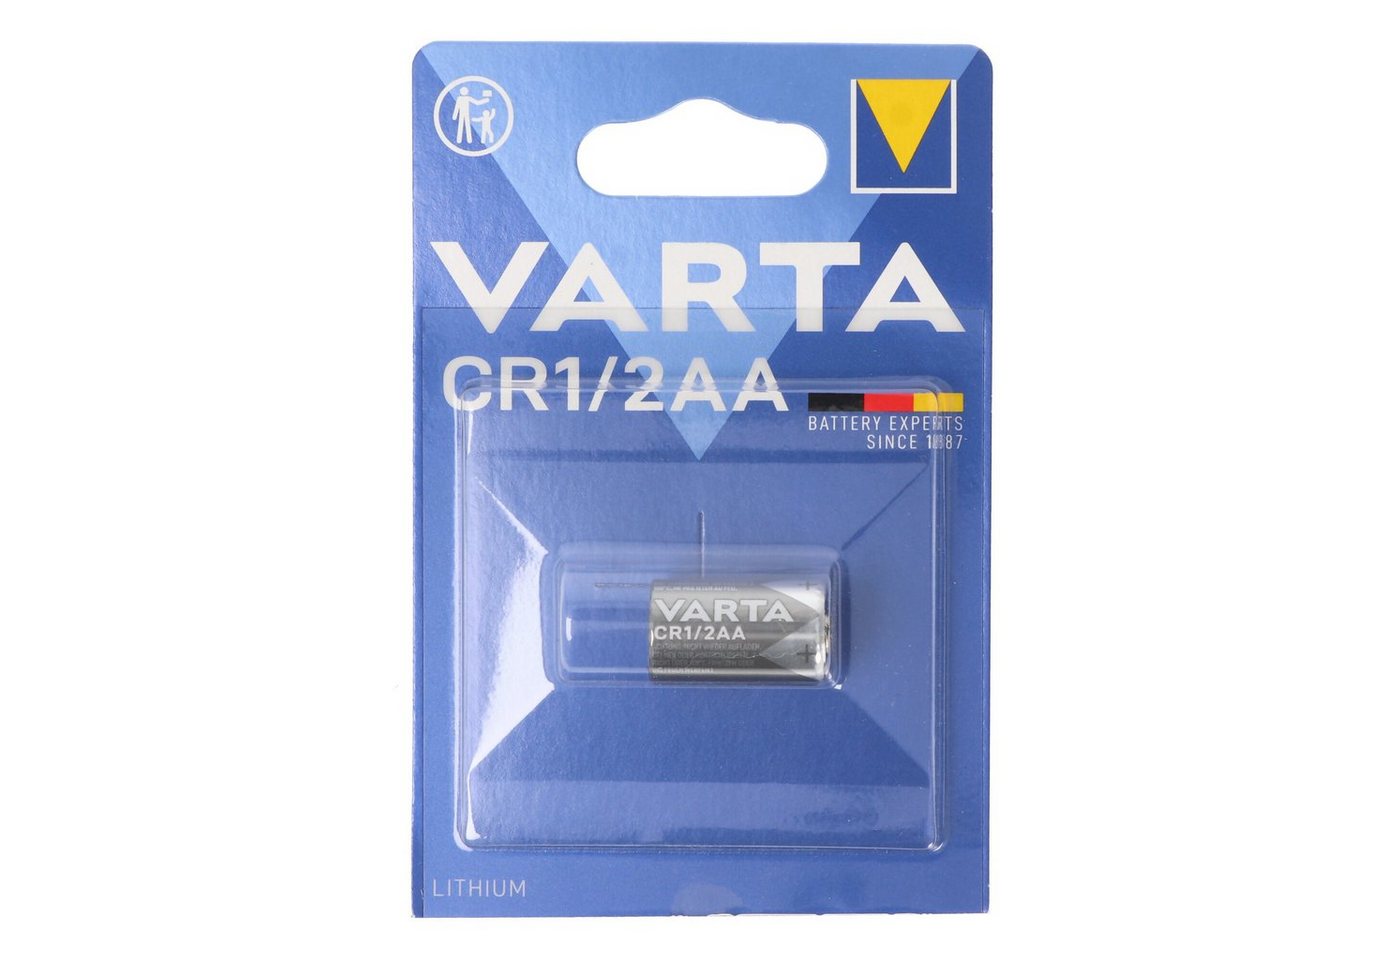 VARTA Varta Lithium CR 1/2 AA Varta 6127 3,0V 950mAh, Polung beachten Batterie, (3,0 V) von VARTA